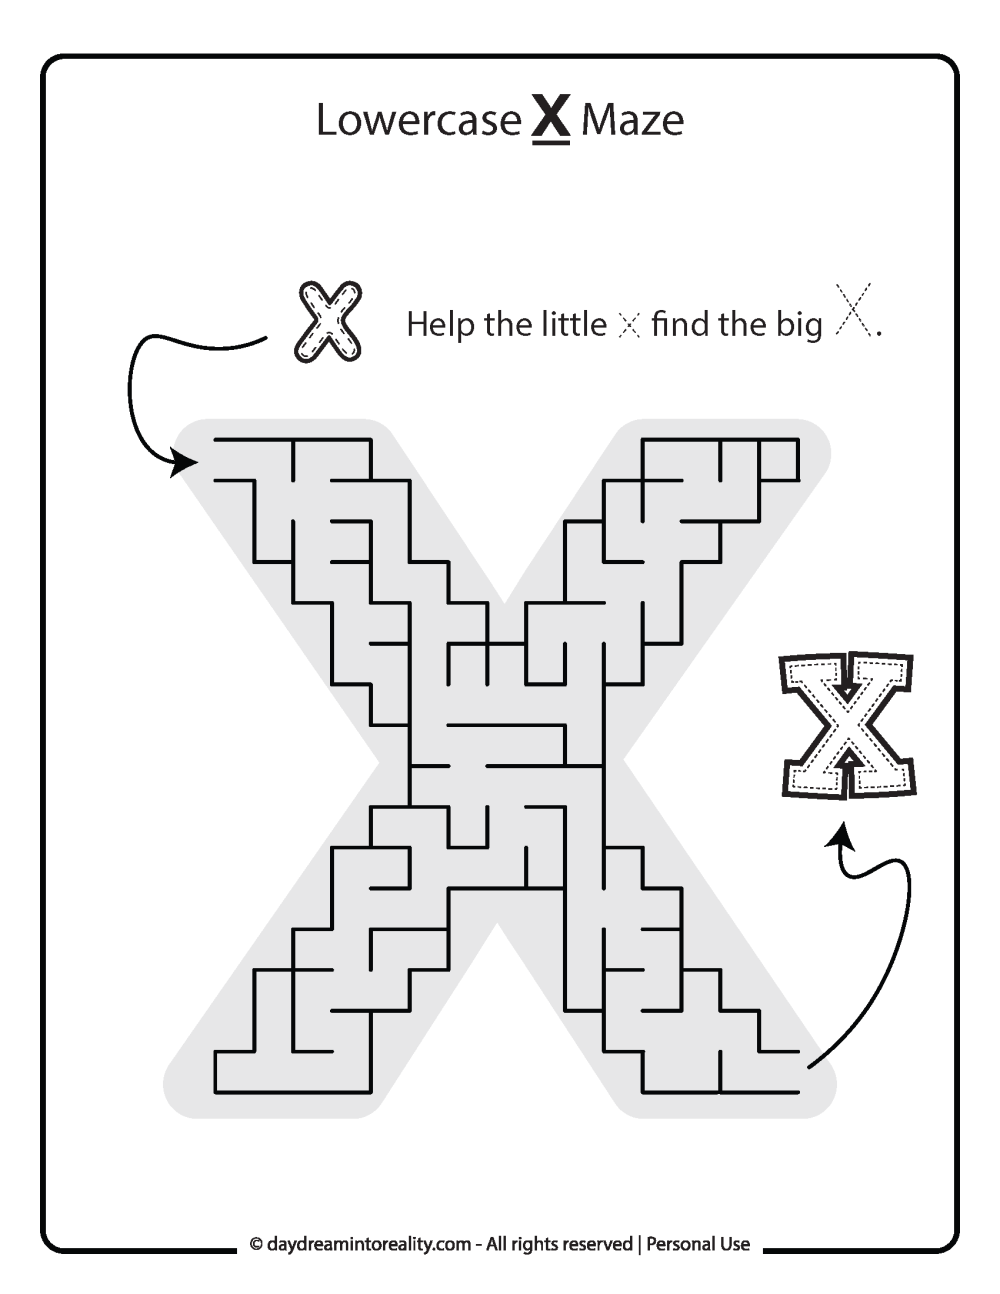 Lowercase "x" Maze Free Printable